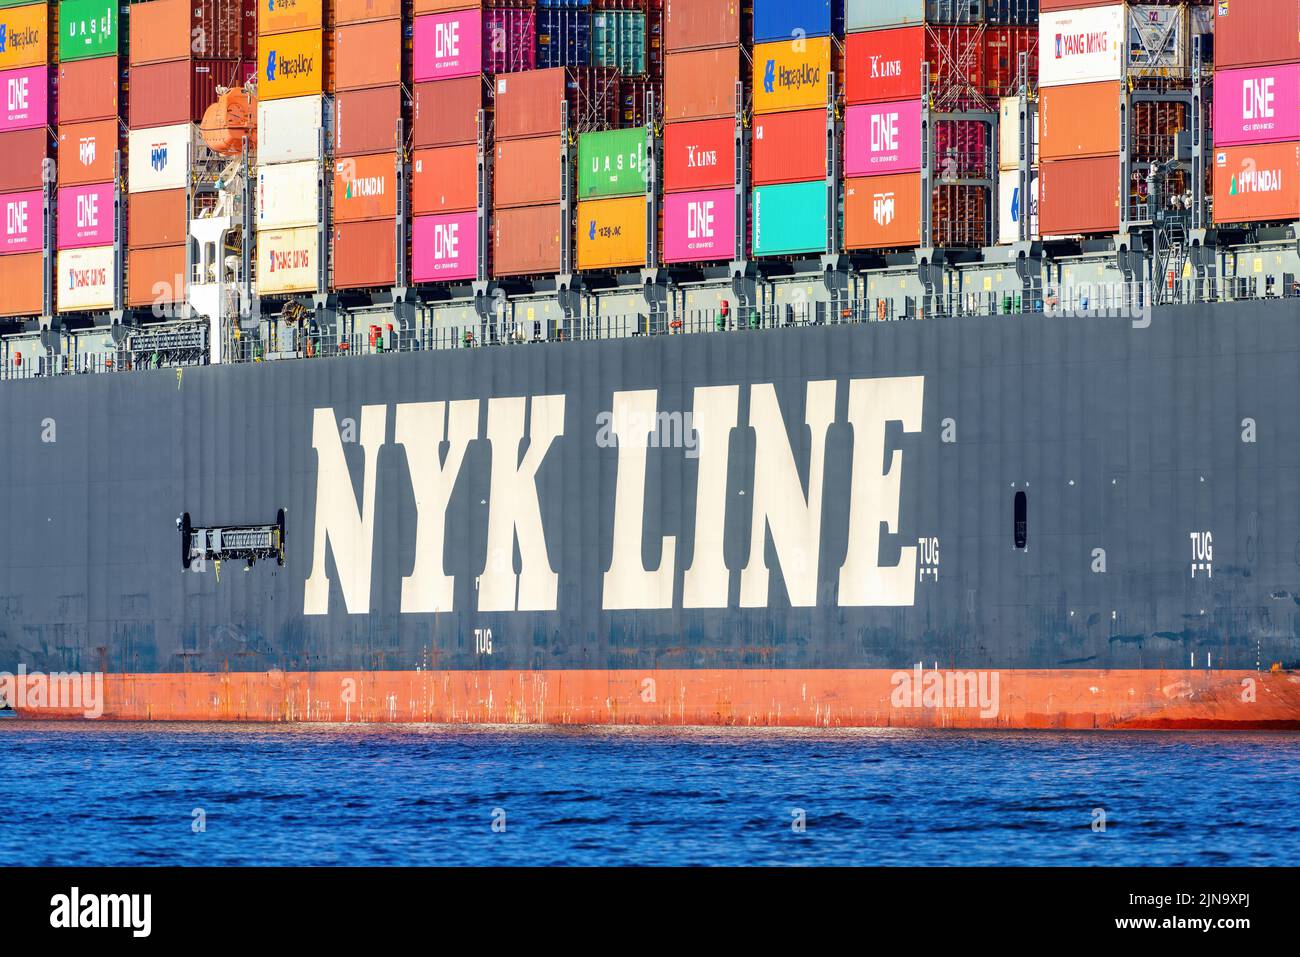 Le logo de la ligne NYK sur le porte-conteneurs NYK Owl - novembre 2020. Banque D'Images